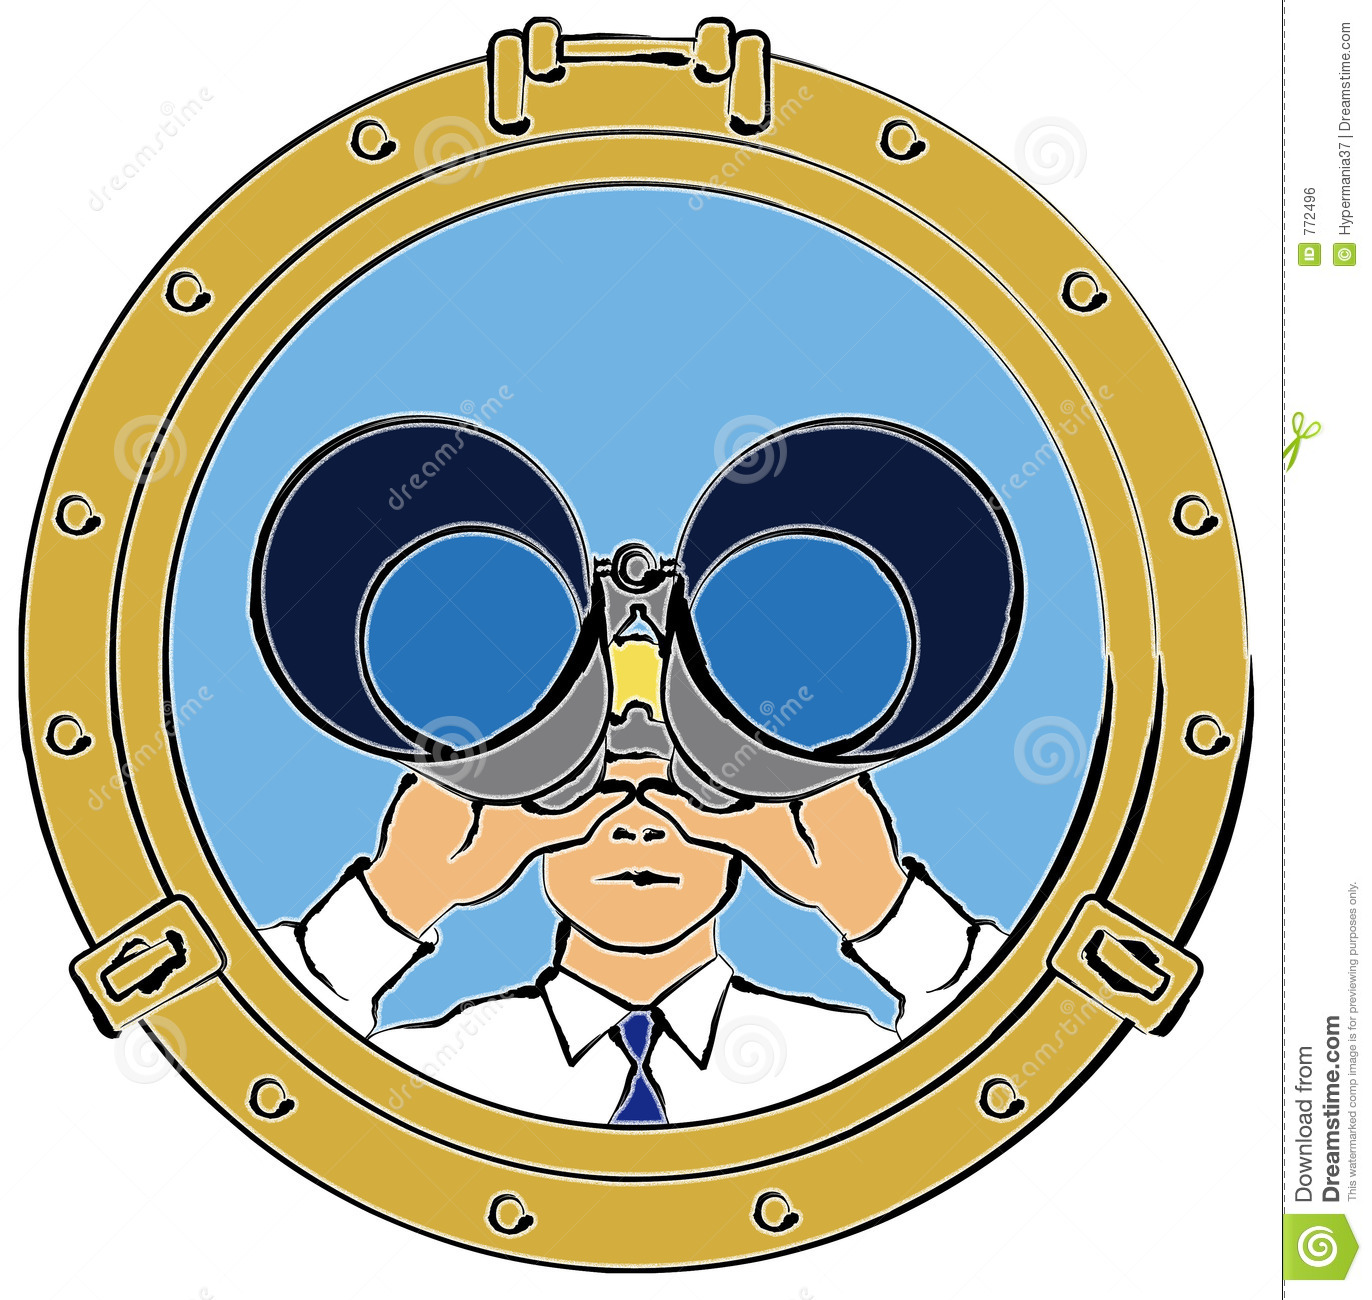 Man Looking Through Binoculars Royalty Free Stock Image   Image    